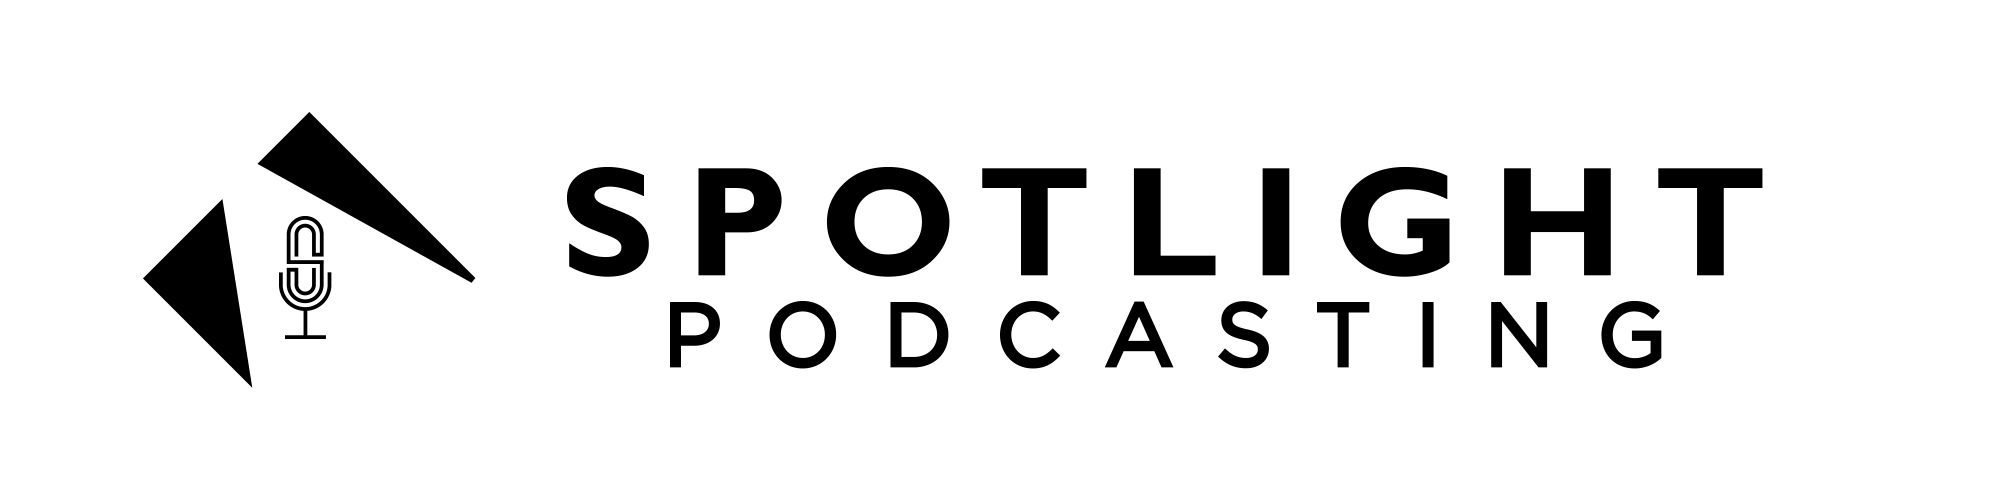 spotlightpodcasting full service podcast solutions logo